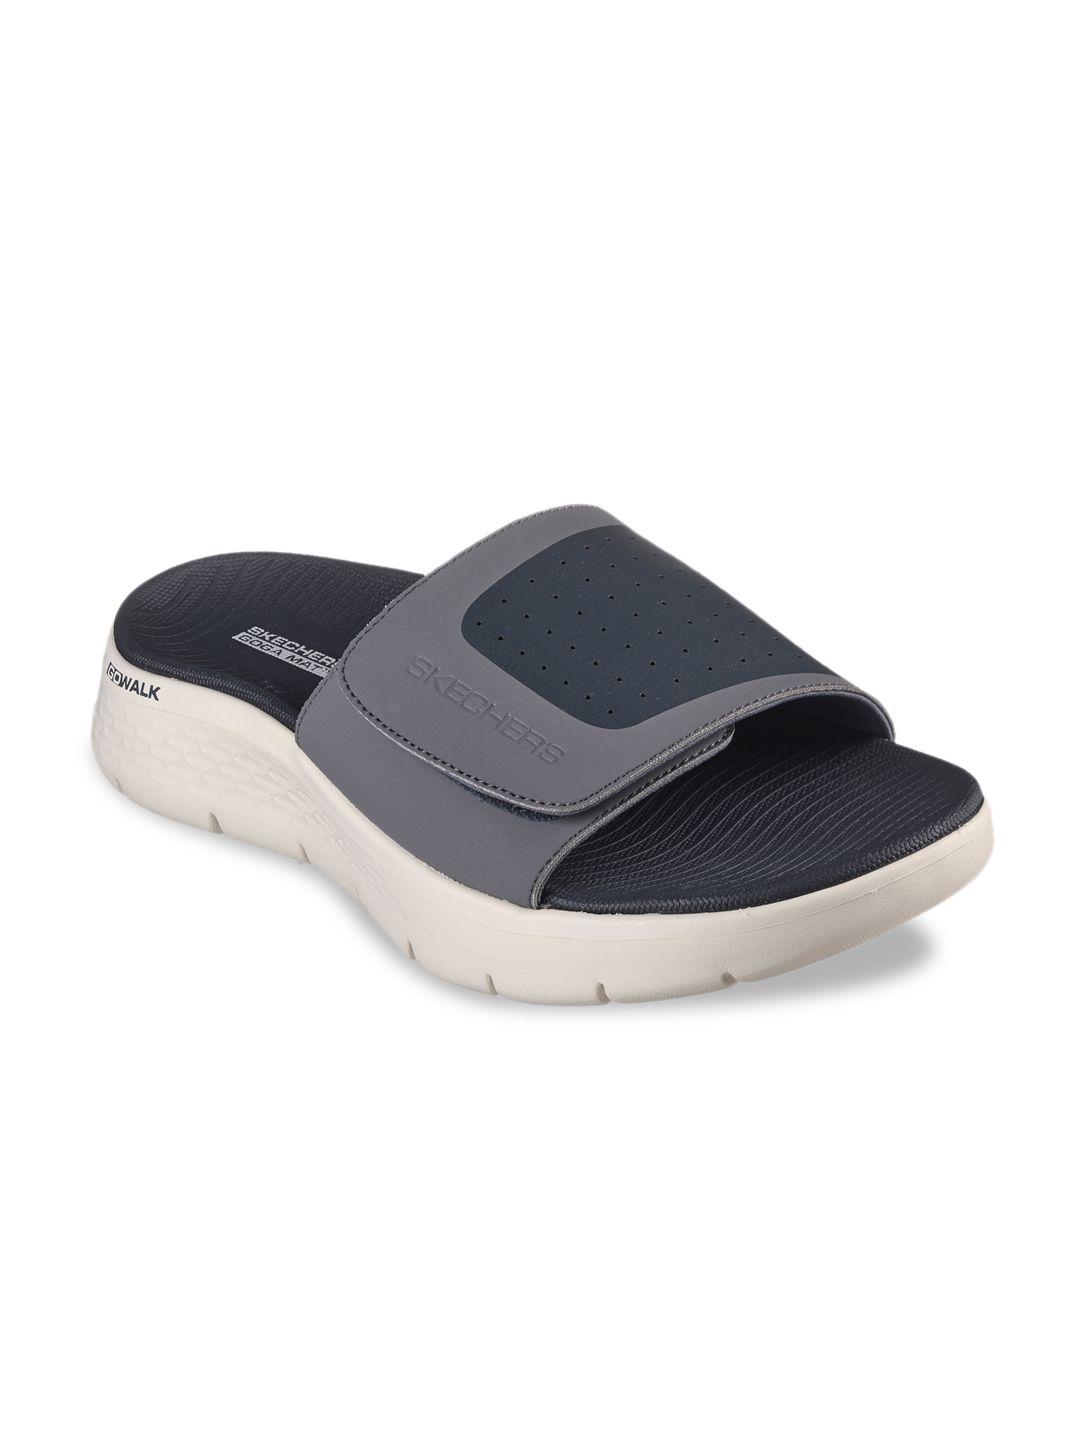 skechers men go walk flex comfort sandals